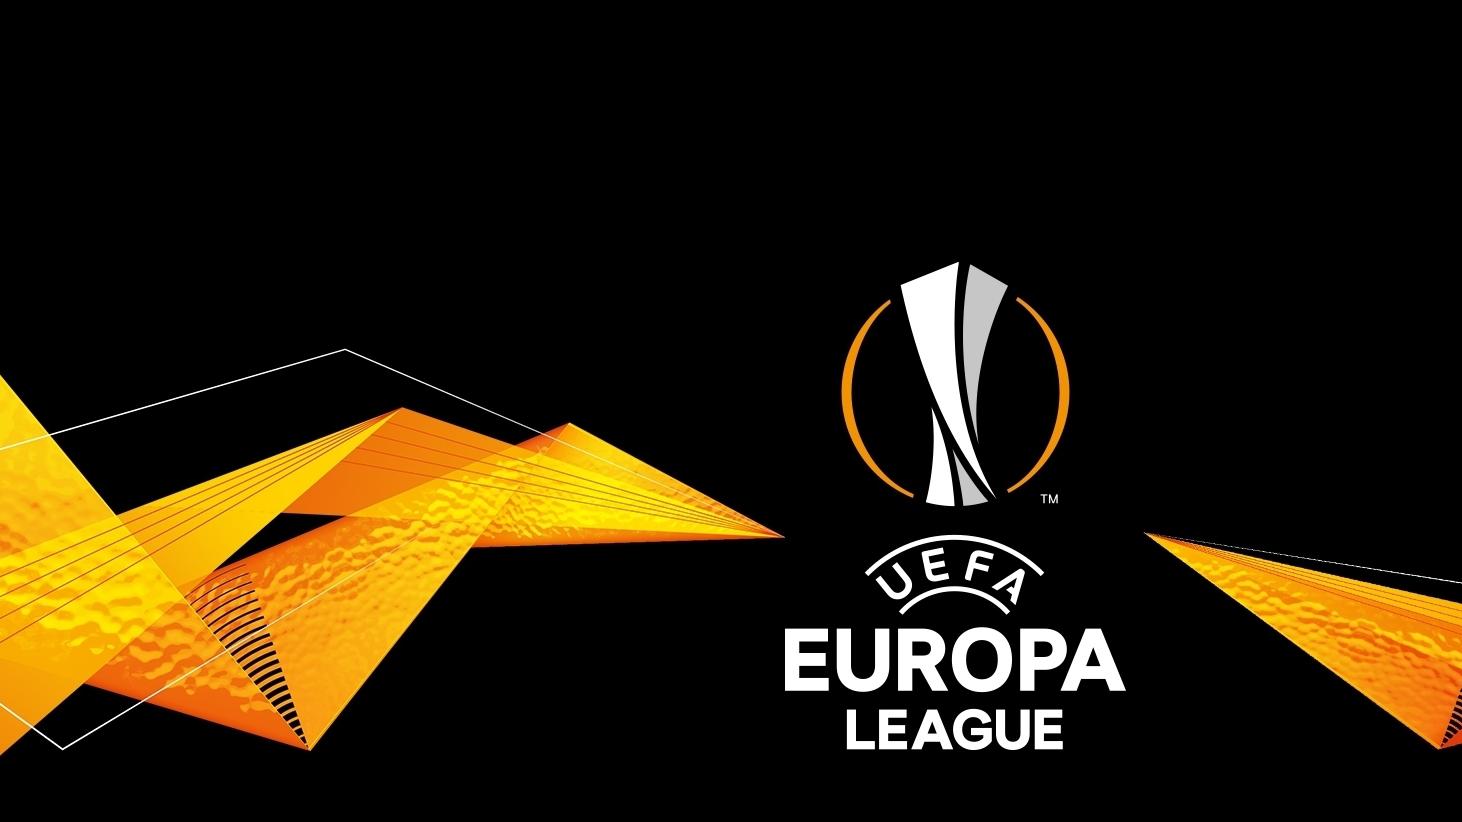 Phân tích tiền thưởng Europa League: Những người chiến thắng nhận được bao nhiêu vào năm 2022?